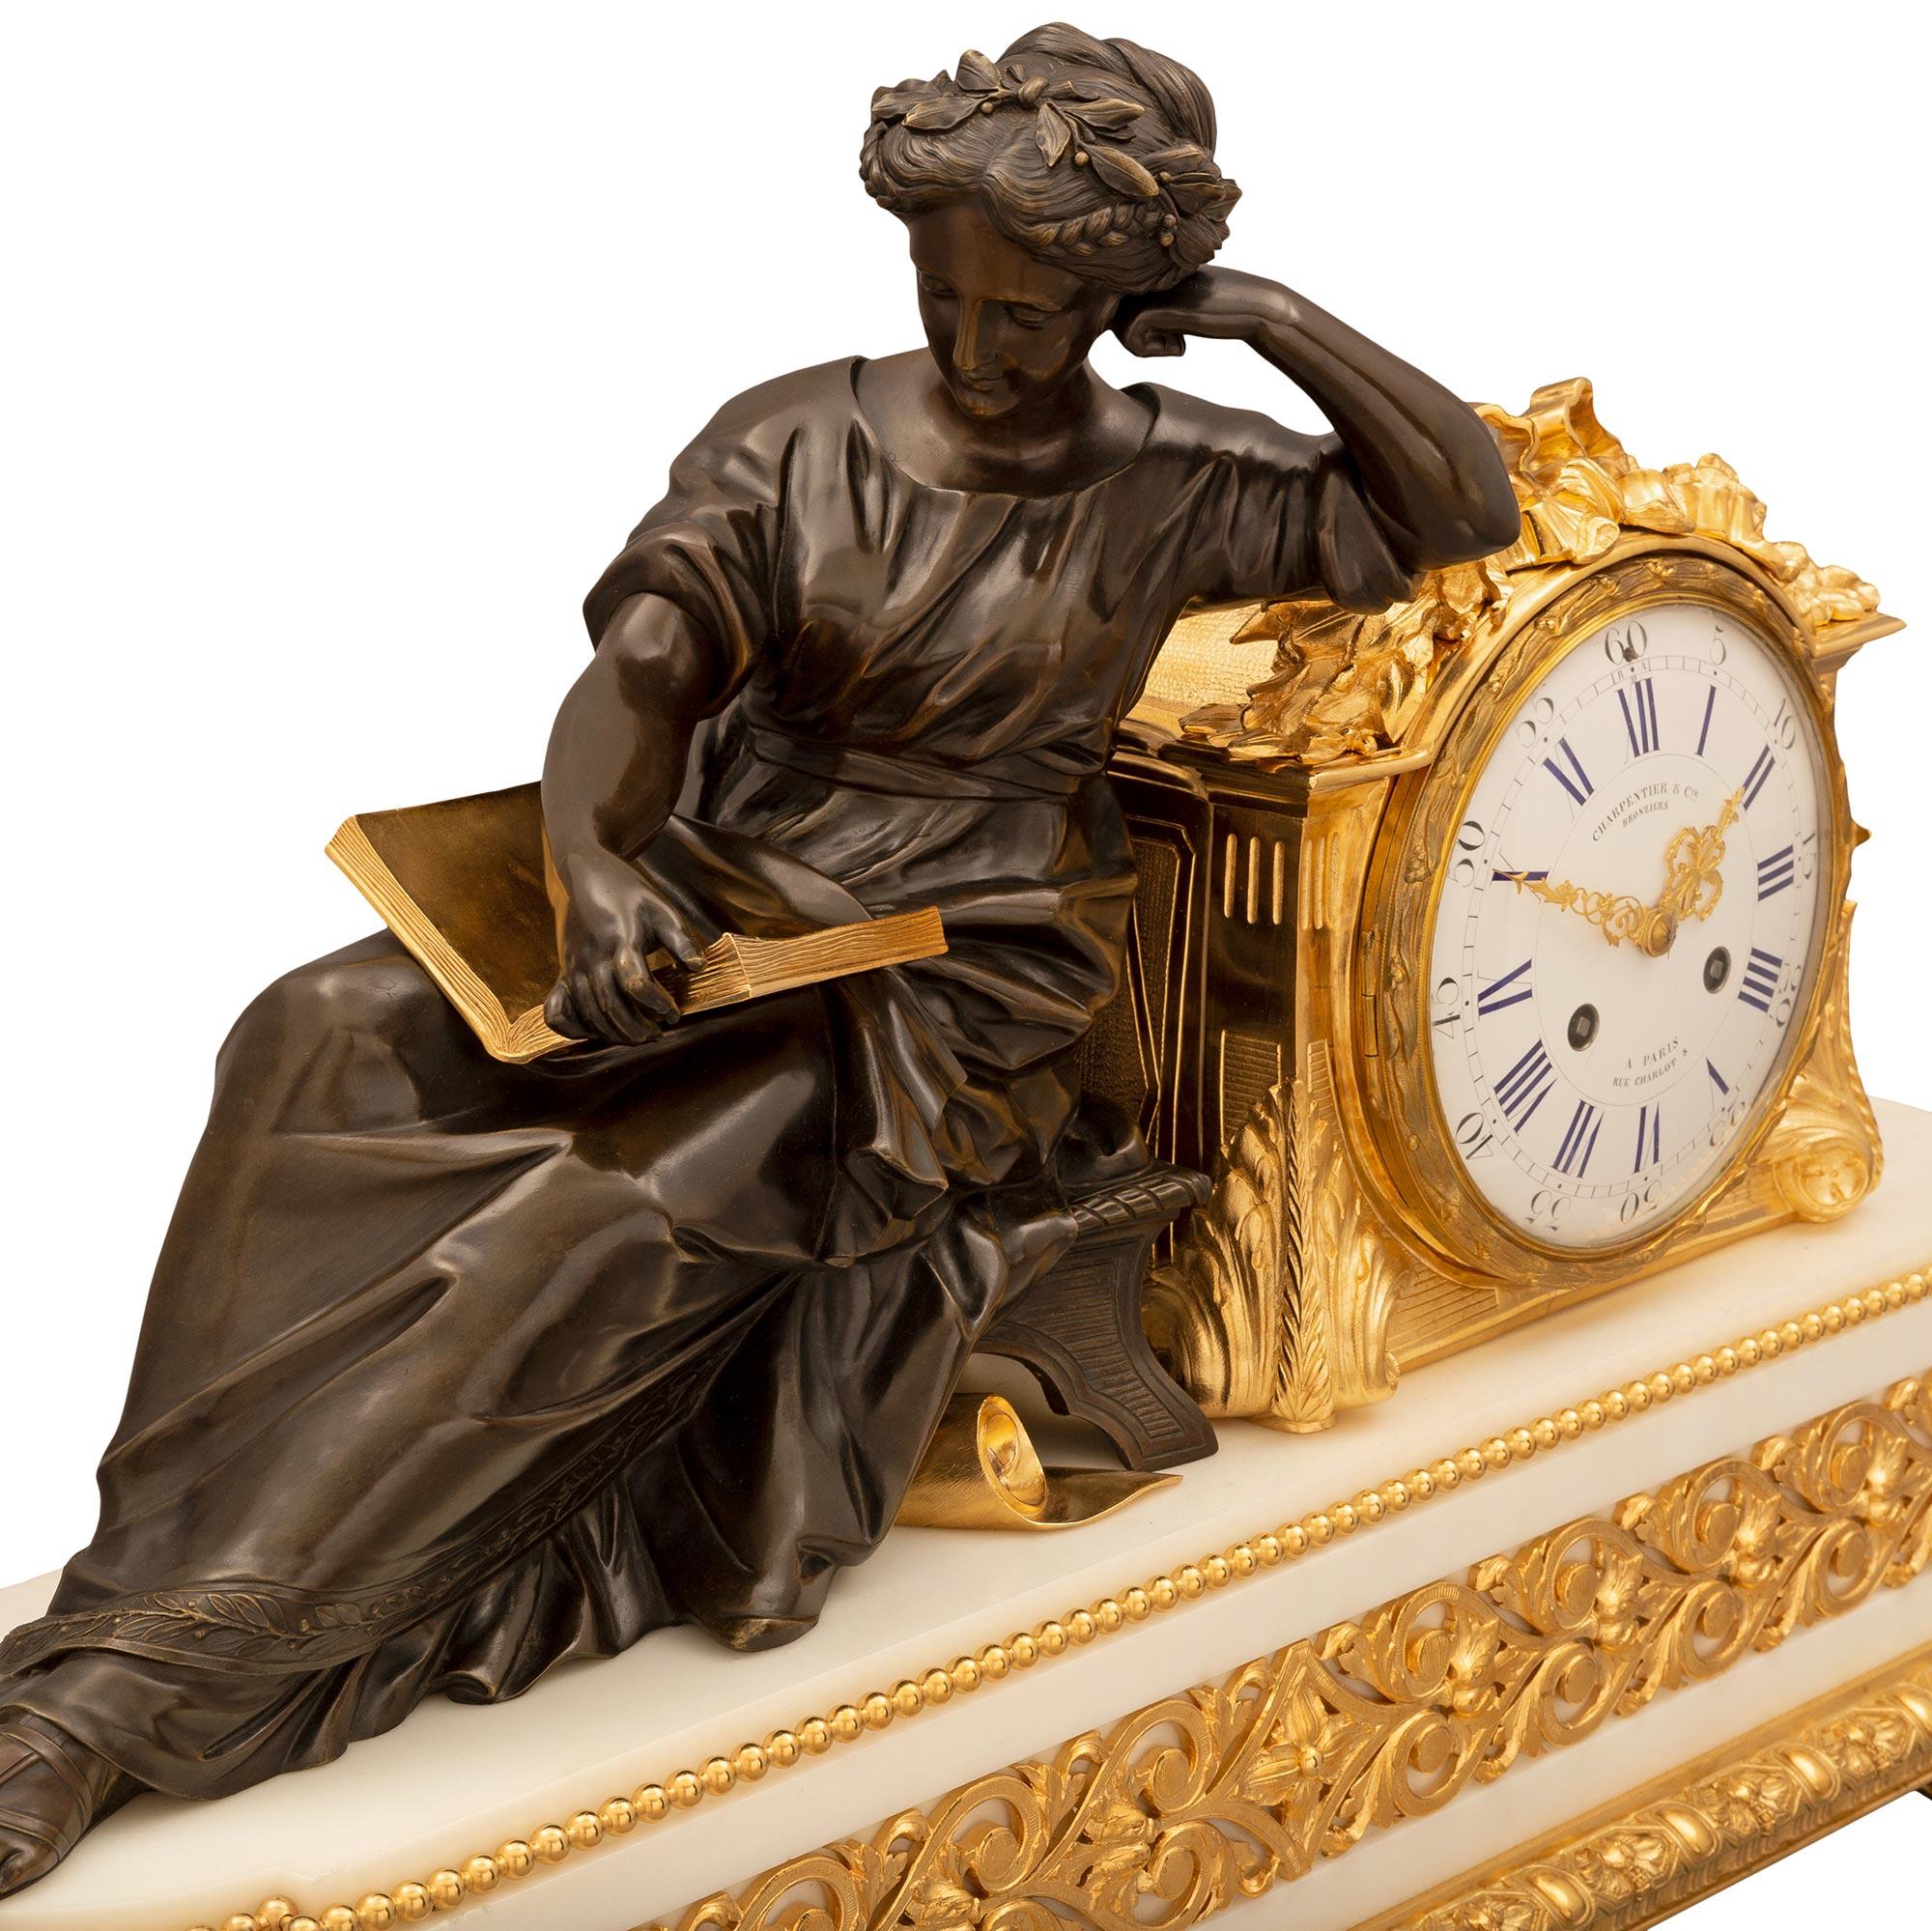 Eine atemberaubende und äußerst hochwertige französische Uhr der Belle Époque des 19. Jahrhunderts aus Ormolu, patinierter Bronze und weißem Carrara-Marmor von Charpentier & Cie. Die Uhr wird von sechs eleganten topieförmigen Füßen unter einem